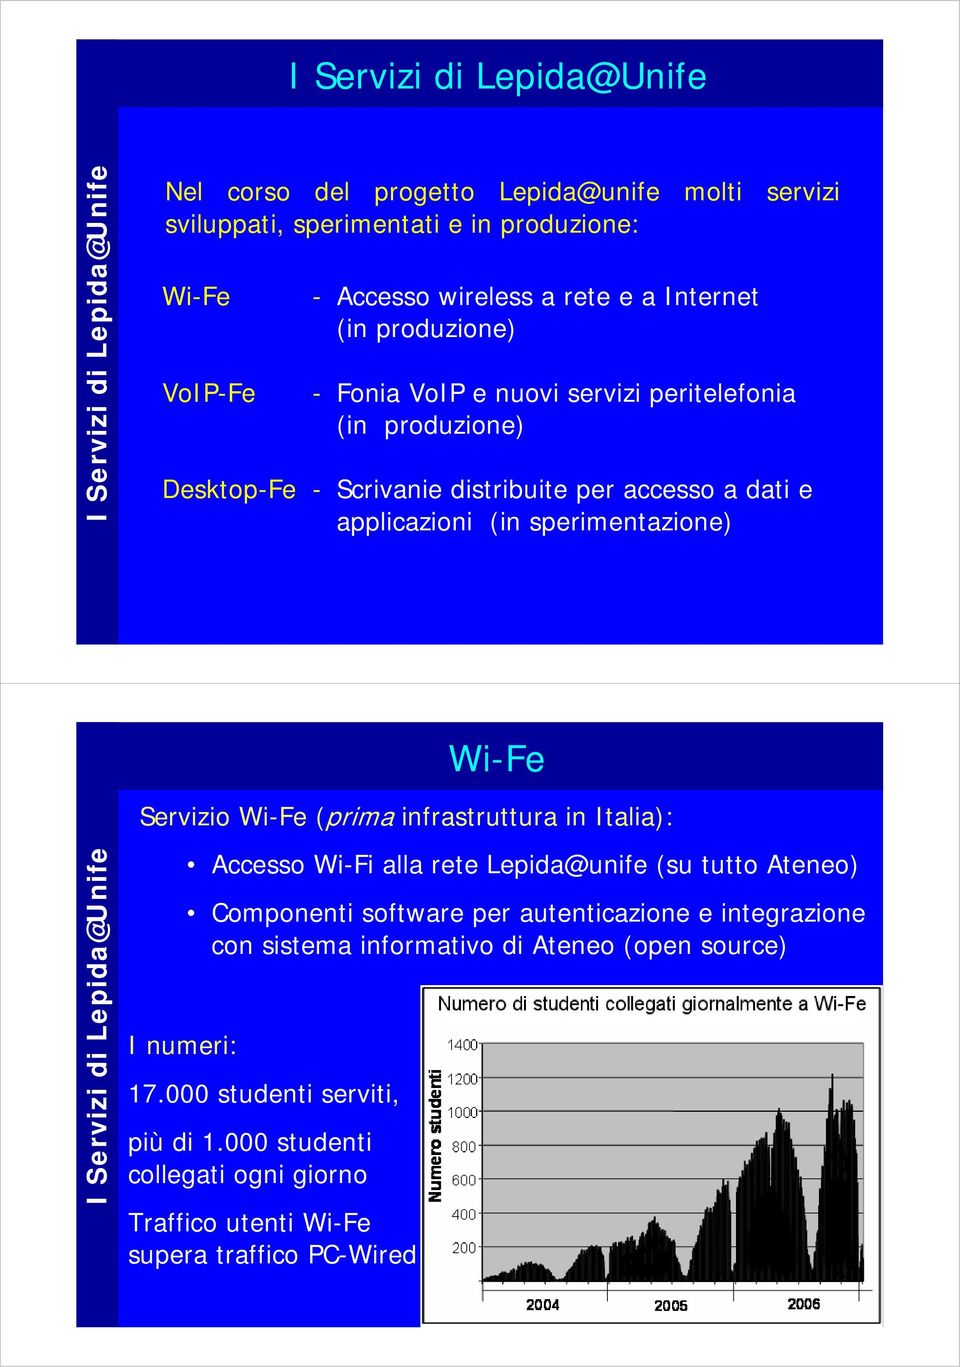 Servizio Wi-Fe (prima infrastruttura in Italia): I numeri: Accesso Wi-Fi alla rete Lepida@unife (su tutto Ateneo) Componenti software per autenticazione e